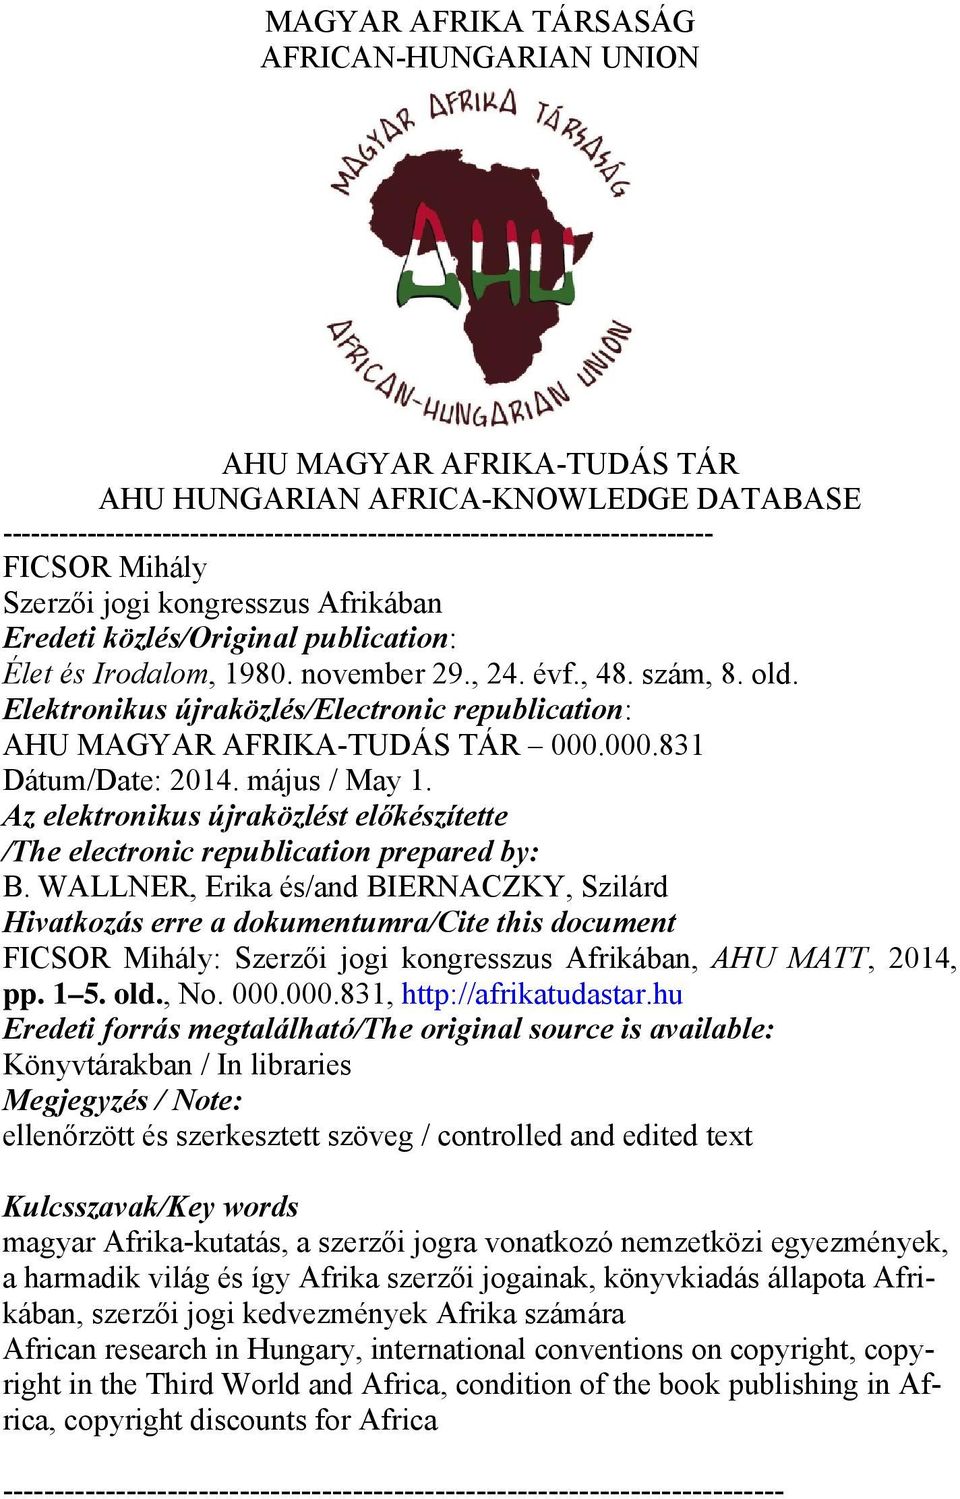 Elektronikus újraközlés/electronic republication: AHU MAGYAR AFRIKA-TUDÁS TÁR 000.000.831 Dátum/Date: 2014. május / May 1.